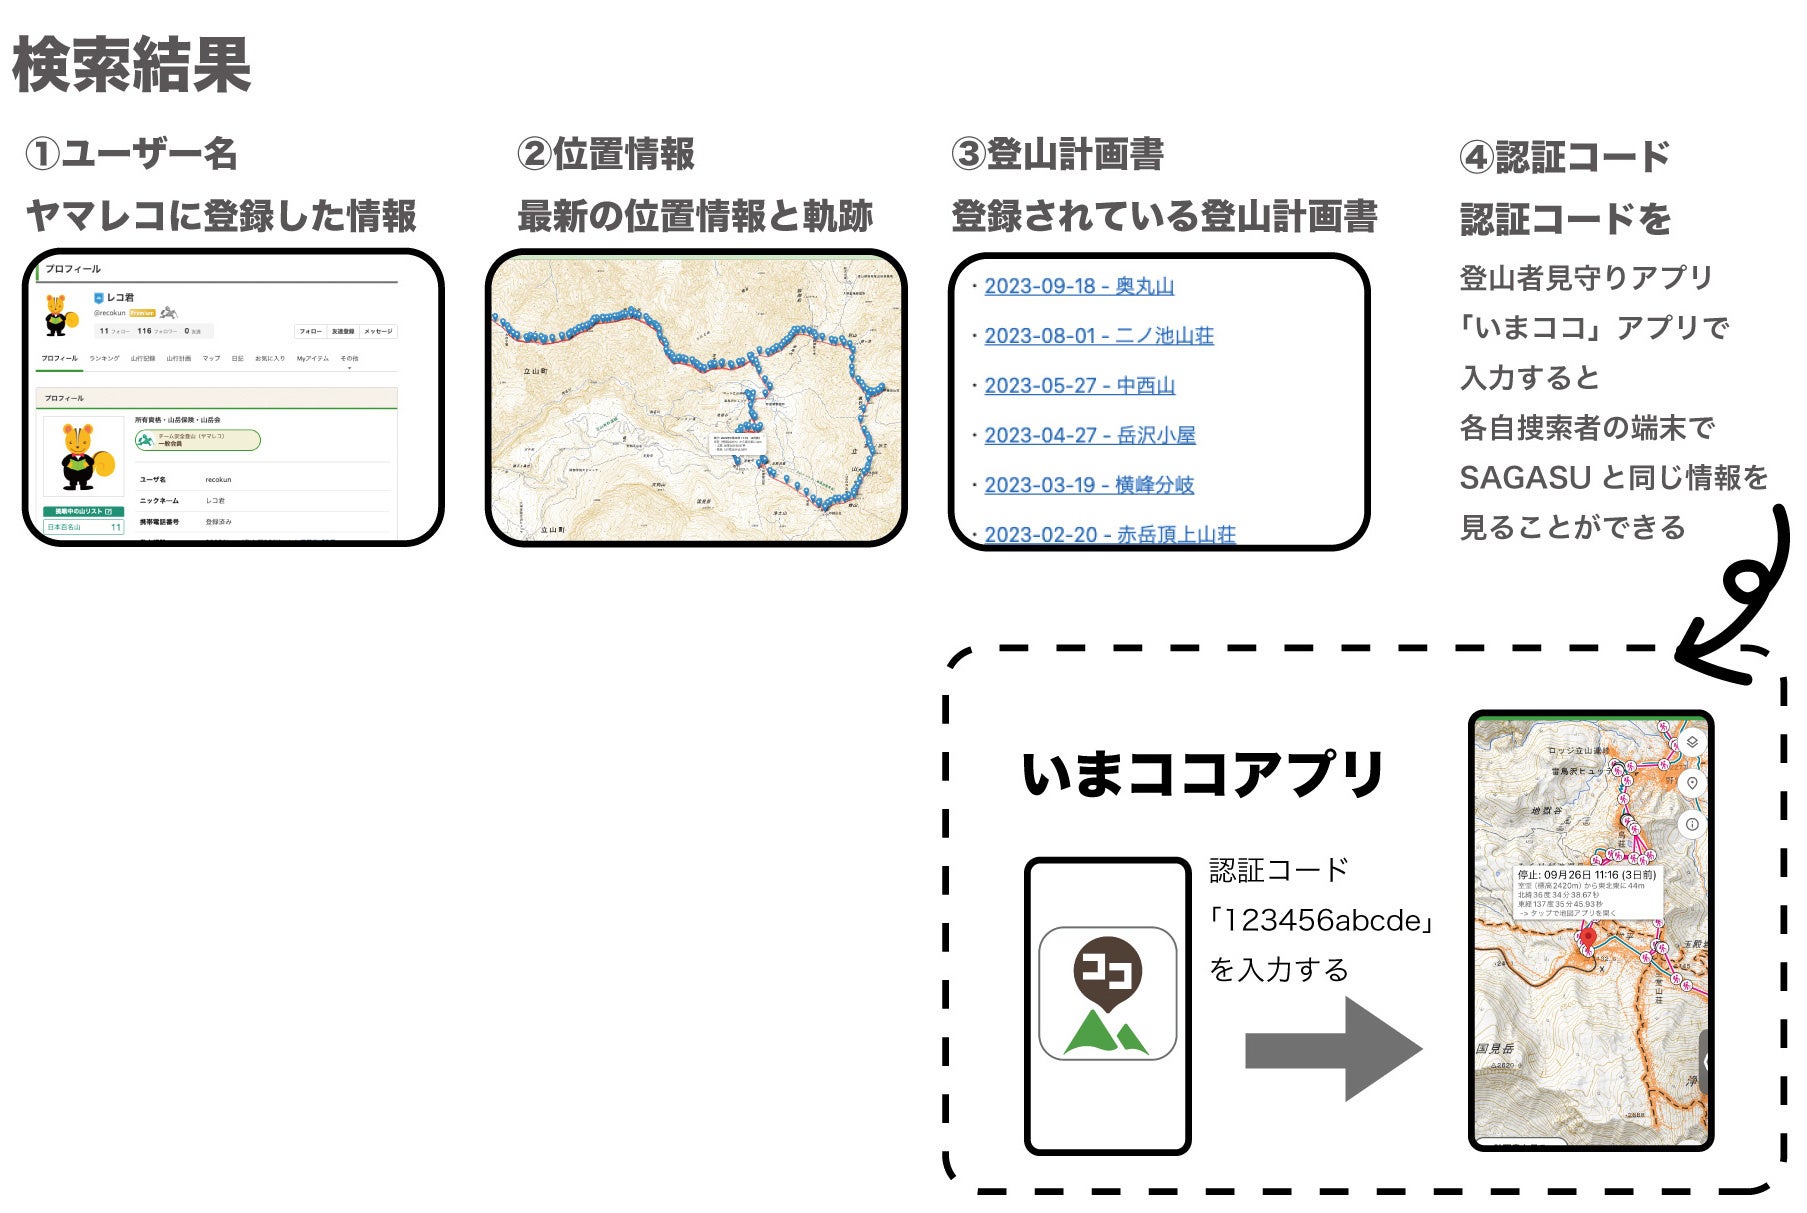 山岳遭難の救助をより迅速に。埼玉県警察とヤマレコとの間で「SAGASU」システム提供の協定を締結しました。のサブ画像3_SAGASUで確認できる遭難者の情報